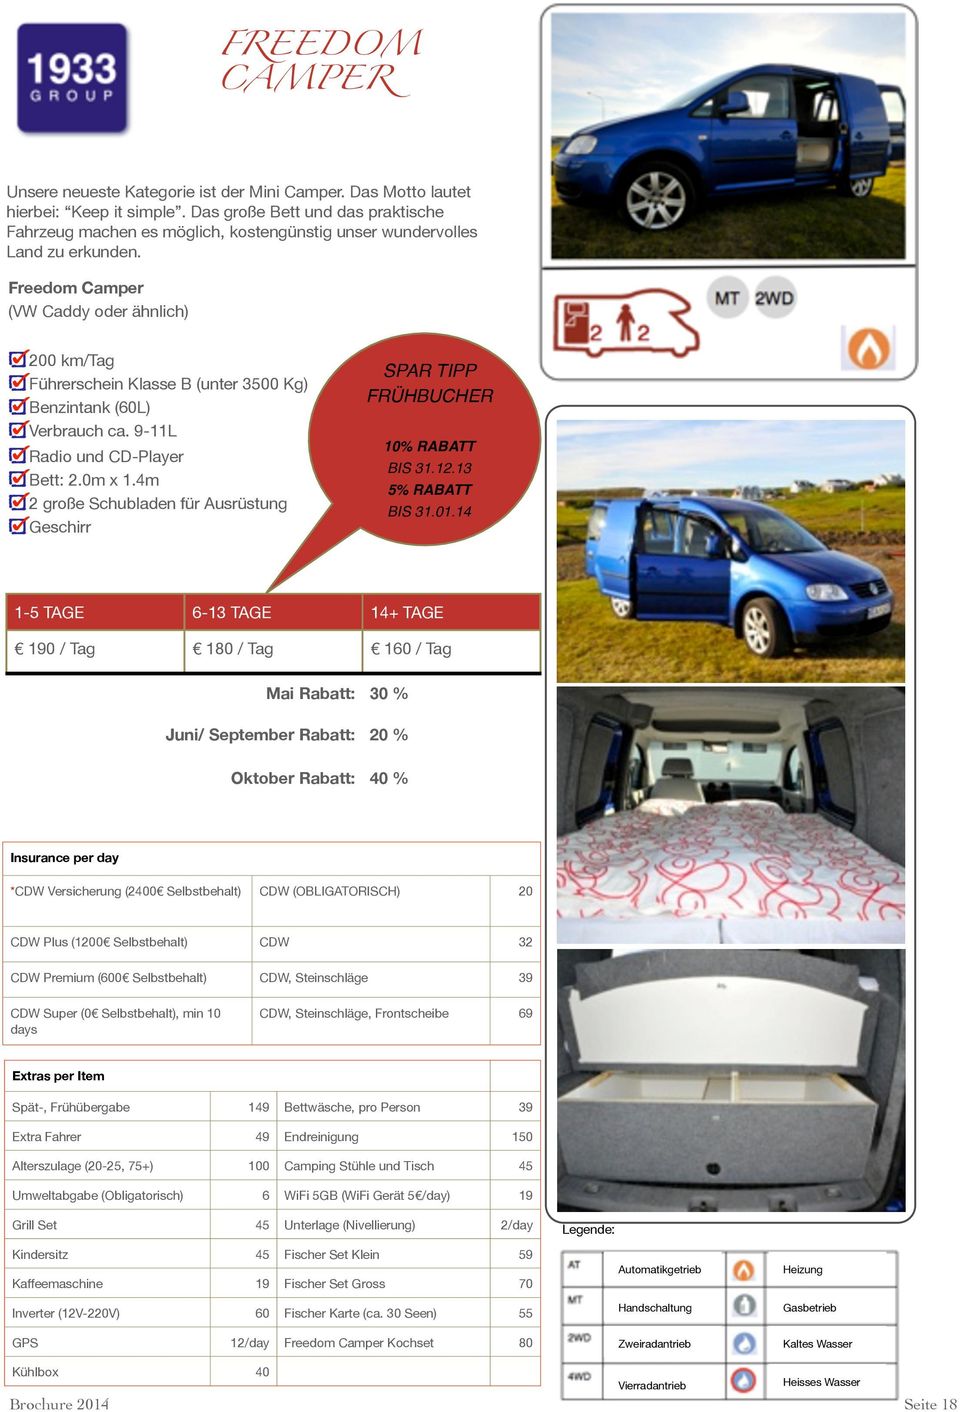 Freedom Camper (VW Caddy oder ähnlich) 200 km/tag Führerschein Klasse B (unter 3500 Kg) Benzintank (60L) Verbrauch ca. 9-11L Radio und CD-Player Bett: 2.0m x 1.